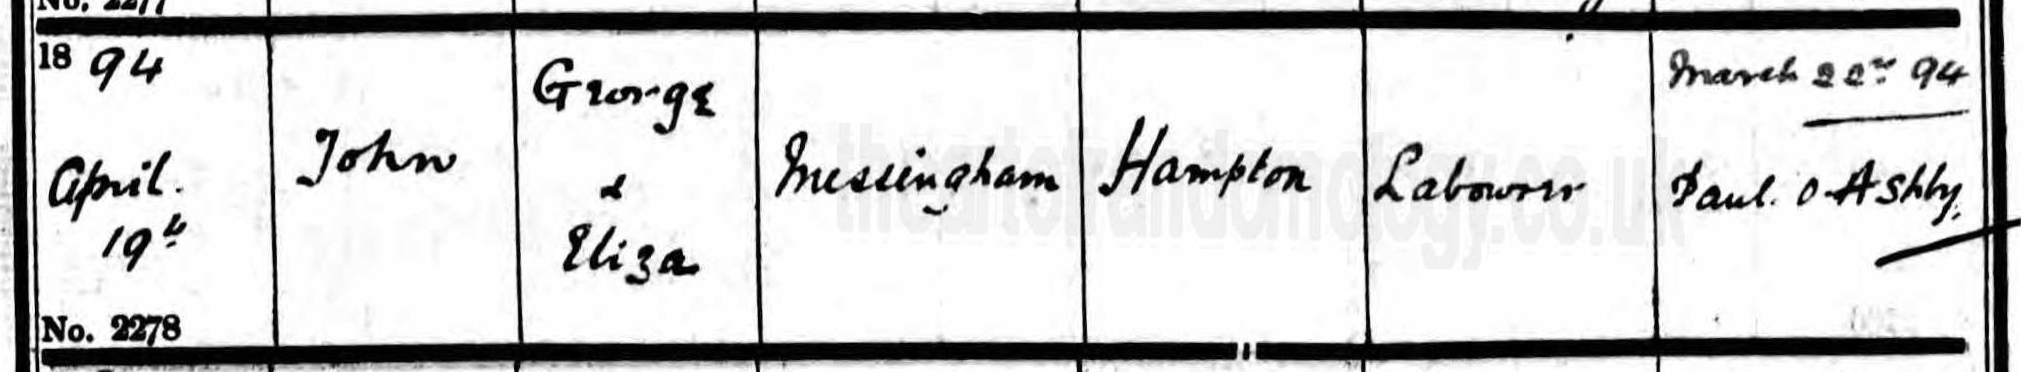 John Messingham baptism 1894